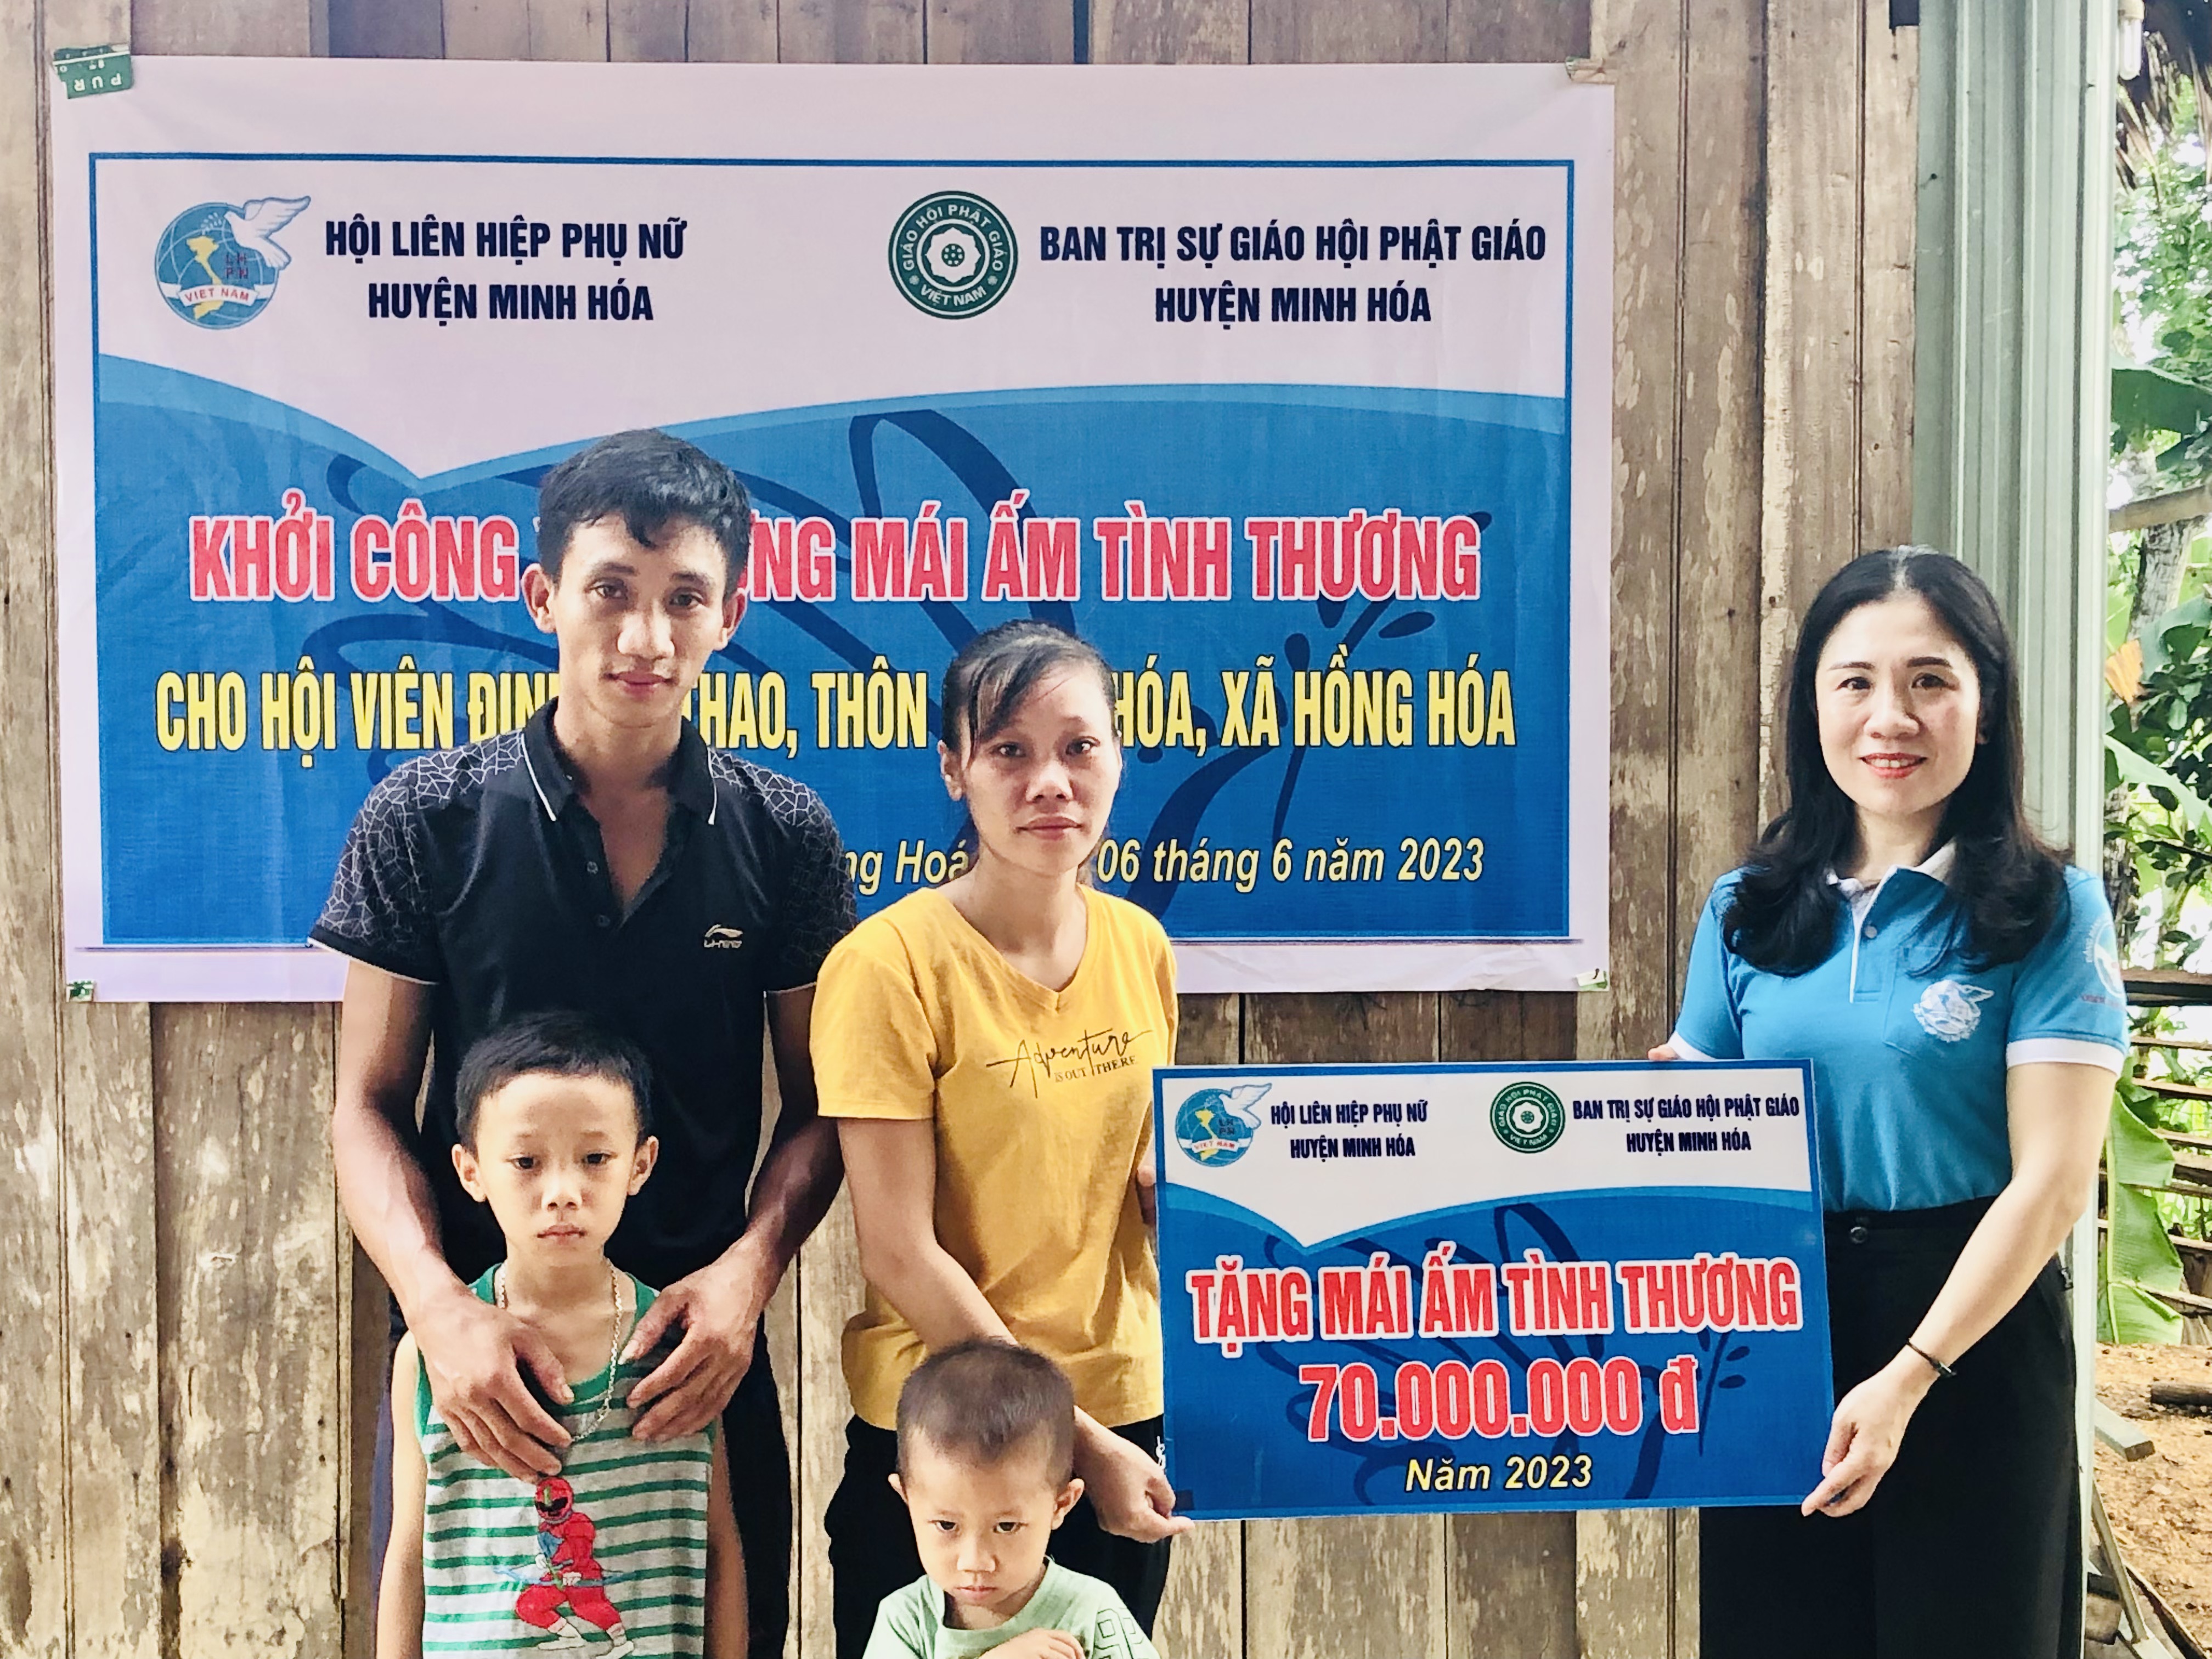 Hội LHPN huyện Minh Hóa kết nối với Ban trị sự Giáo hội phật giáo Việt Nam huyện Minh Hóa hỗ trợ 70 triệu đồng để giúp chị Thao làm ngôi nhà mới